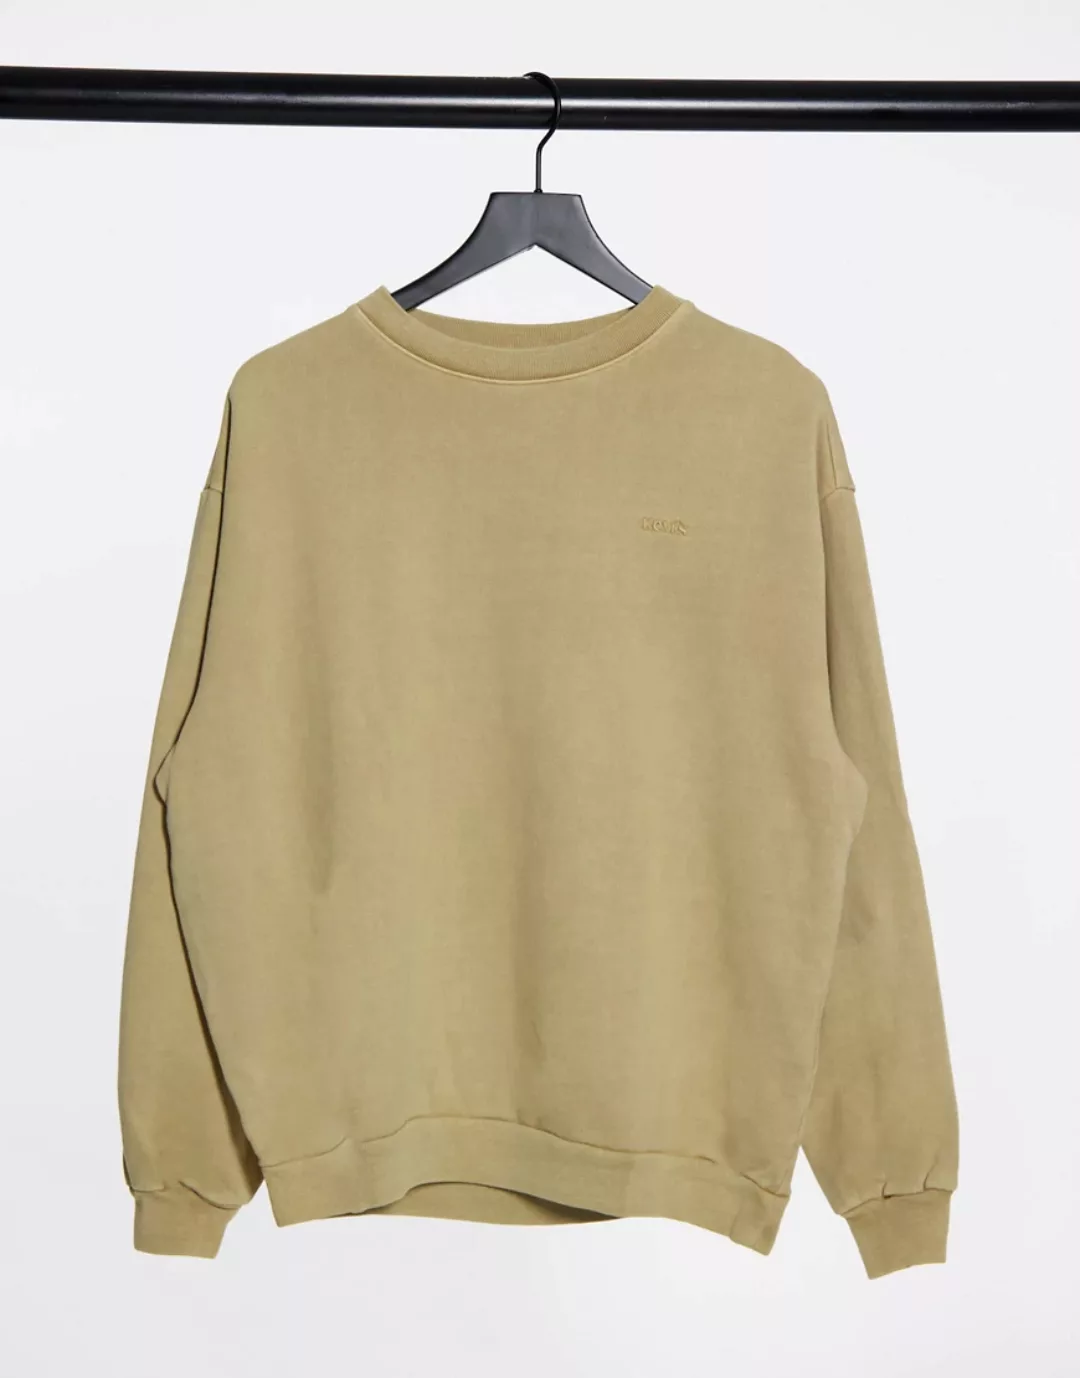 Levi's – Melrose – Bequemes Sweatshirt mit Rundhalsausschnitt in Beige-Neut günstig online kaufen